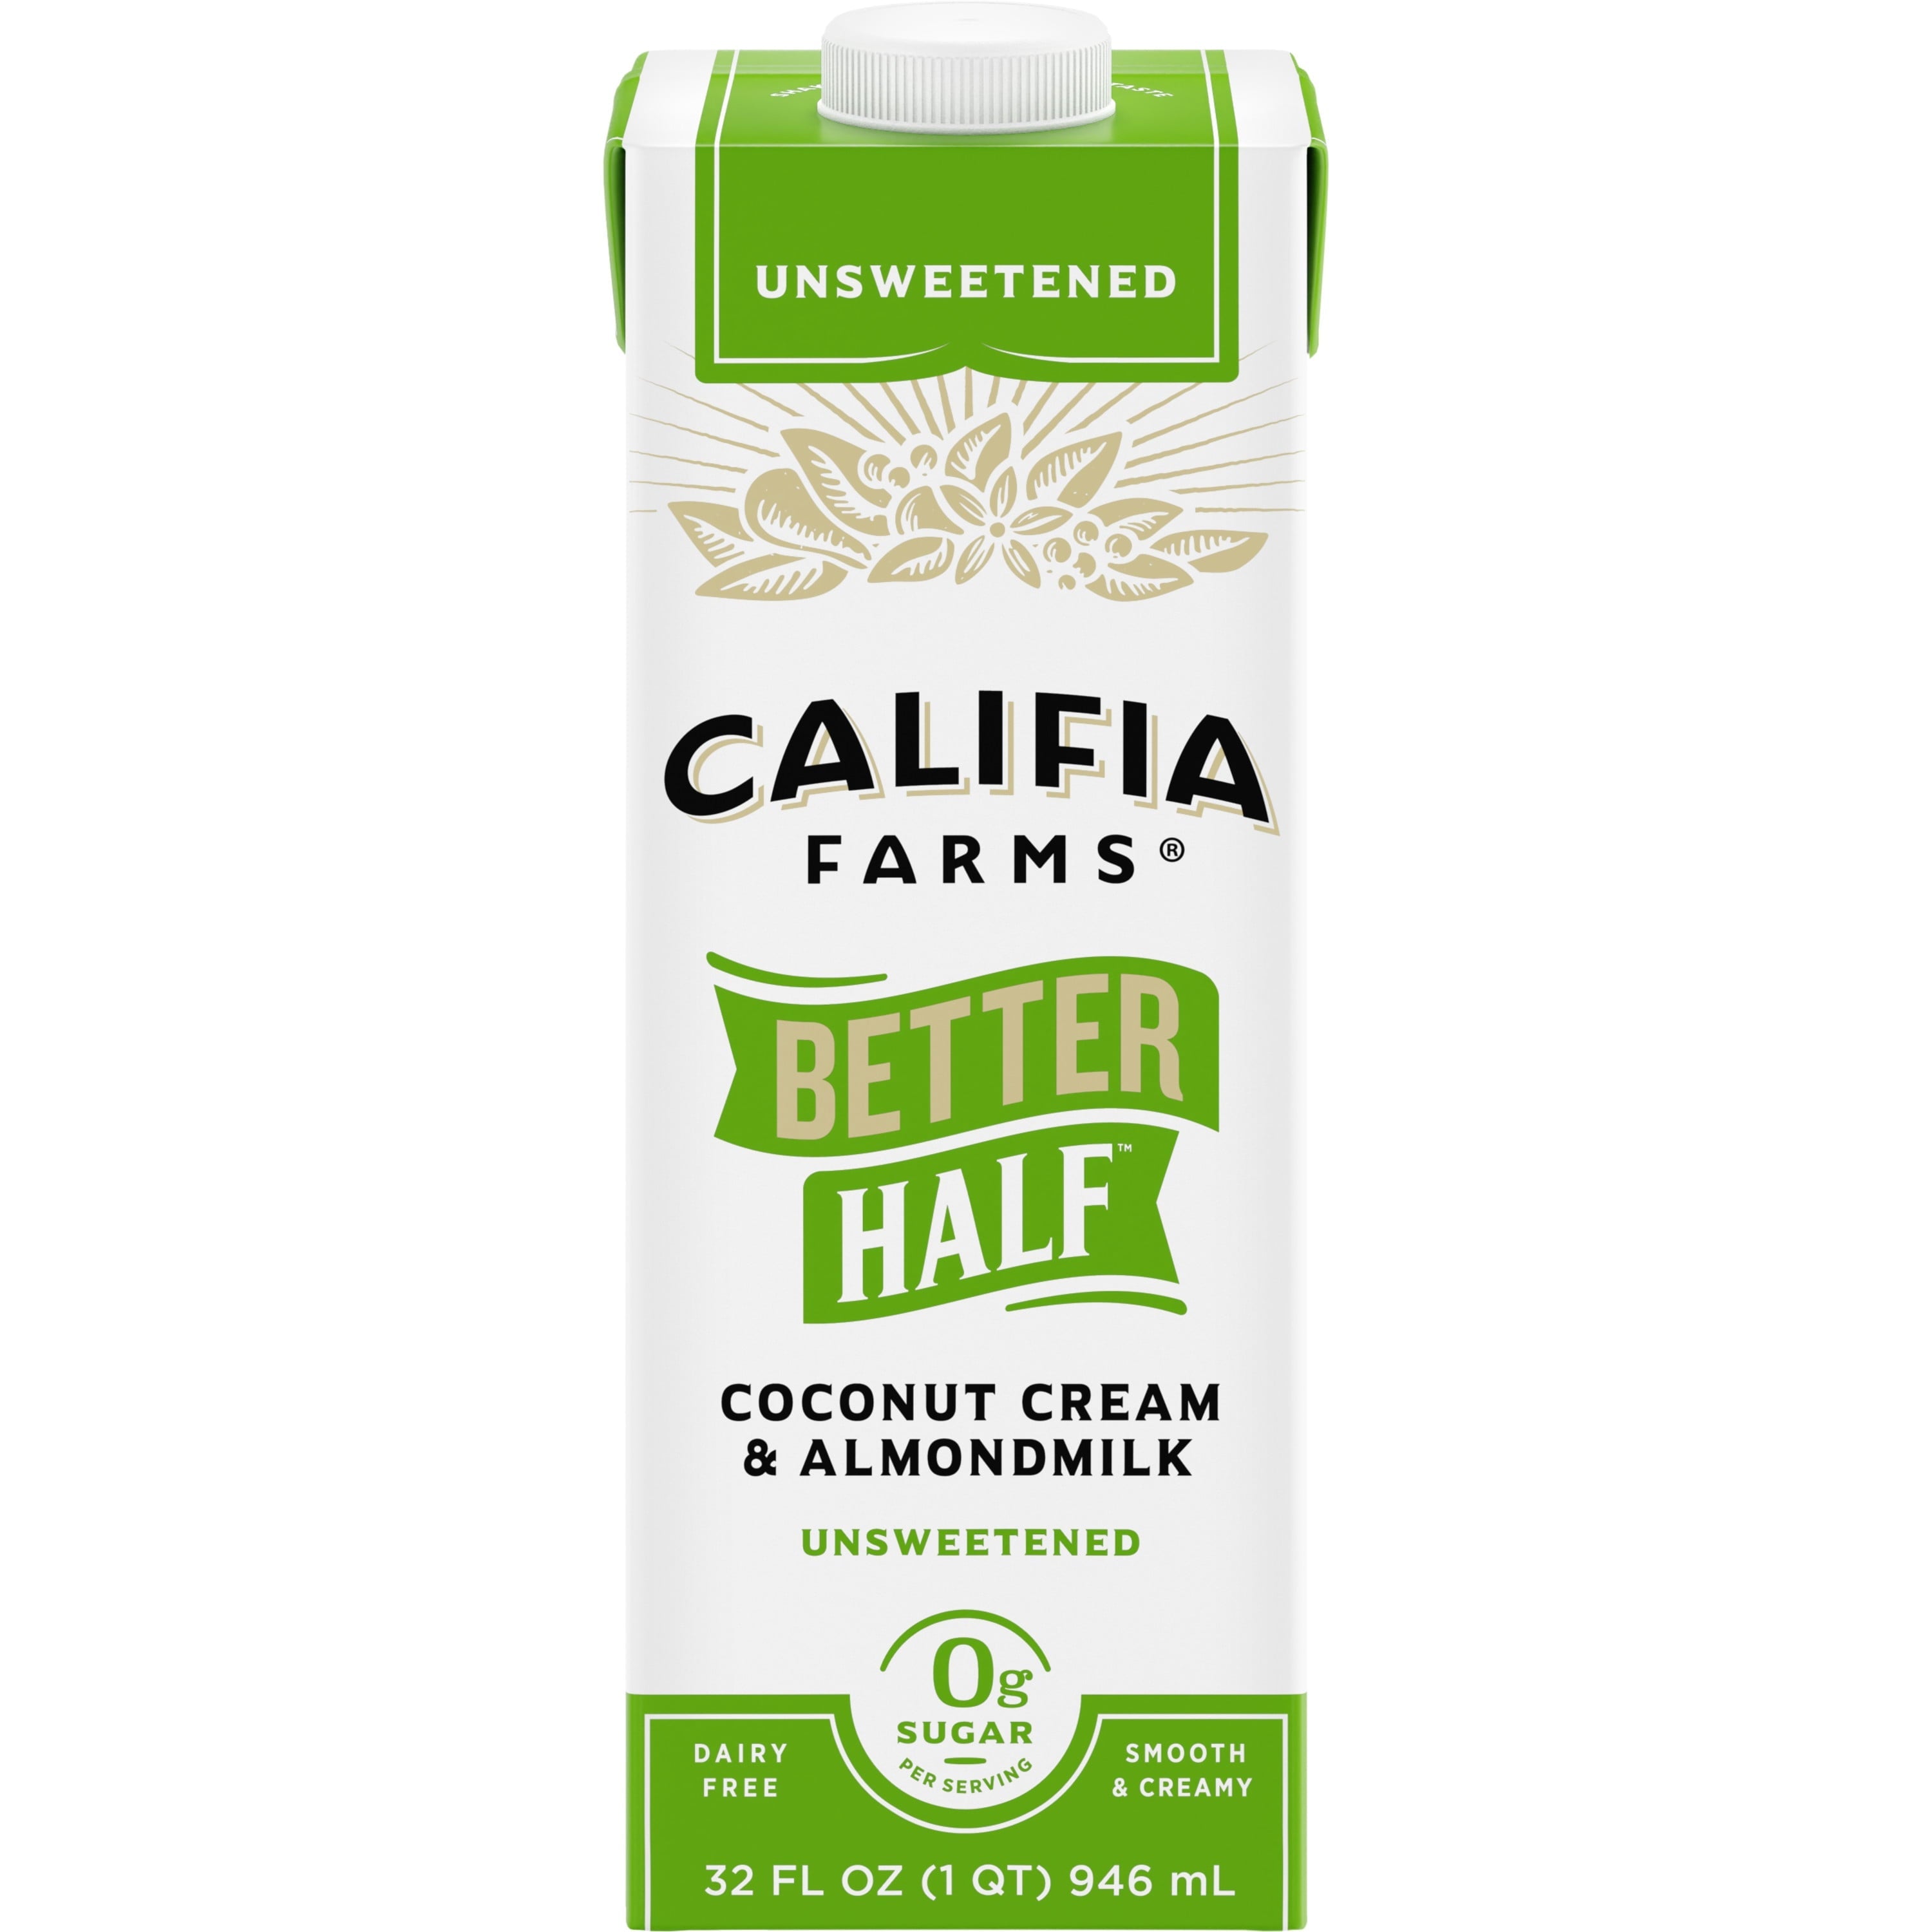 Califia Unsweetened Better Half Coconut Cream & AlmondMilk 32 Fl Oz Carton